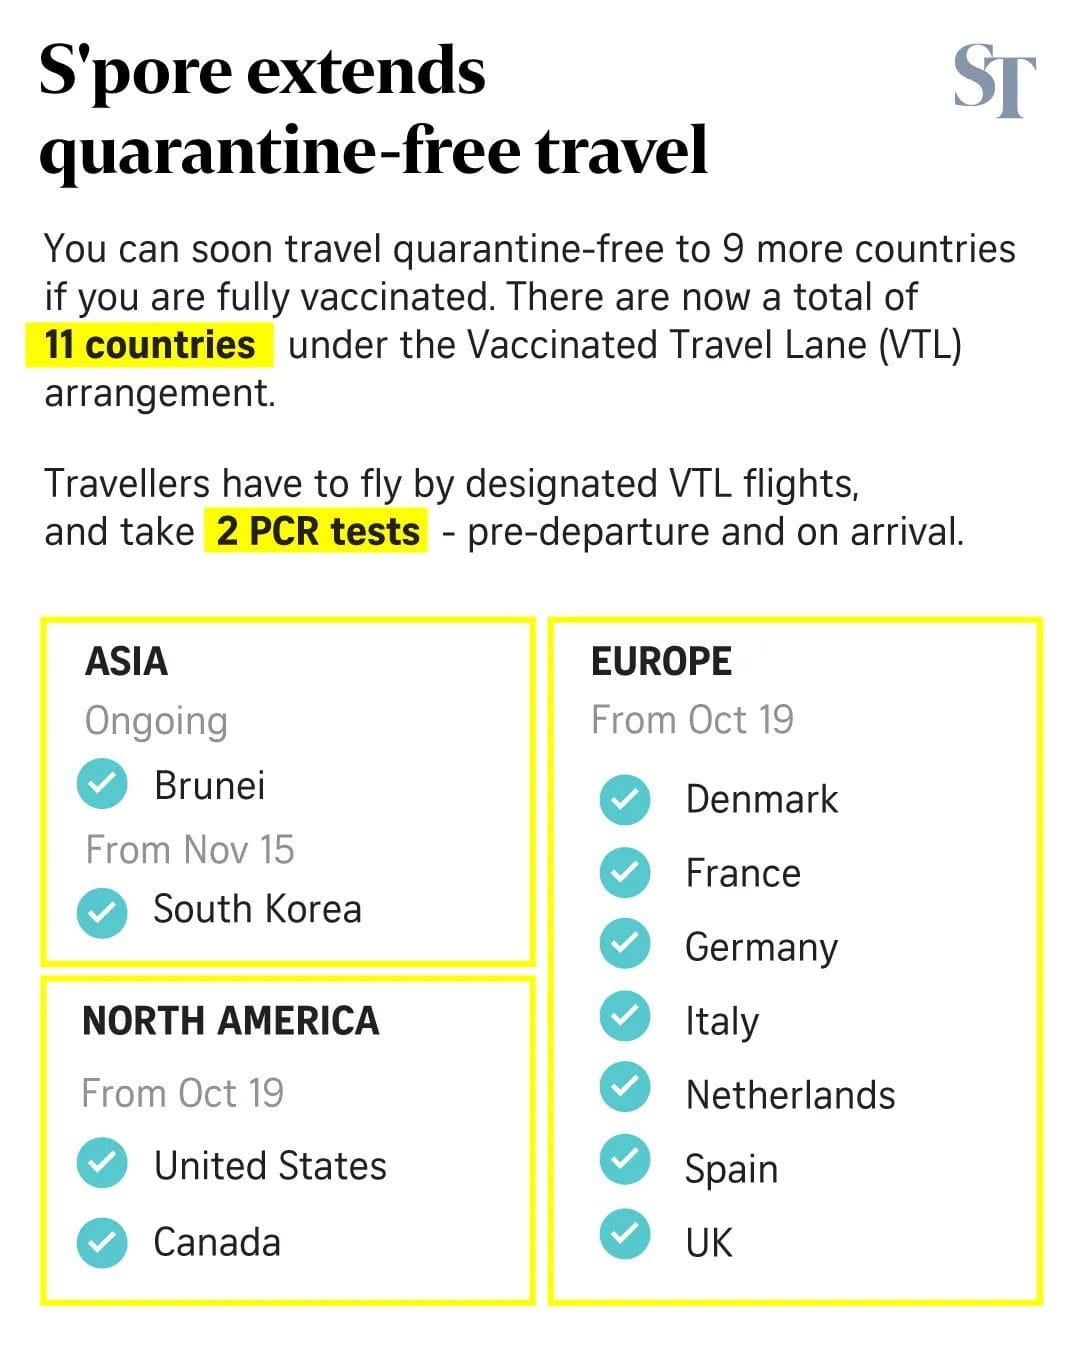 八个欧美国家加入新疫苗接种者旅游走廊计划  不包括大马